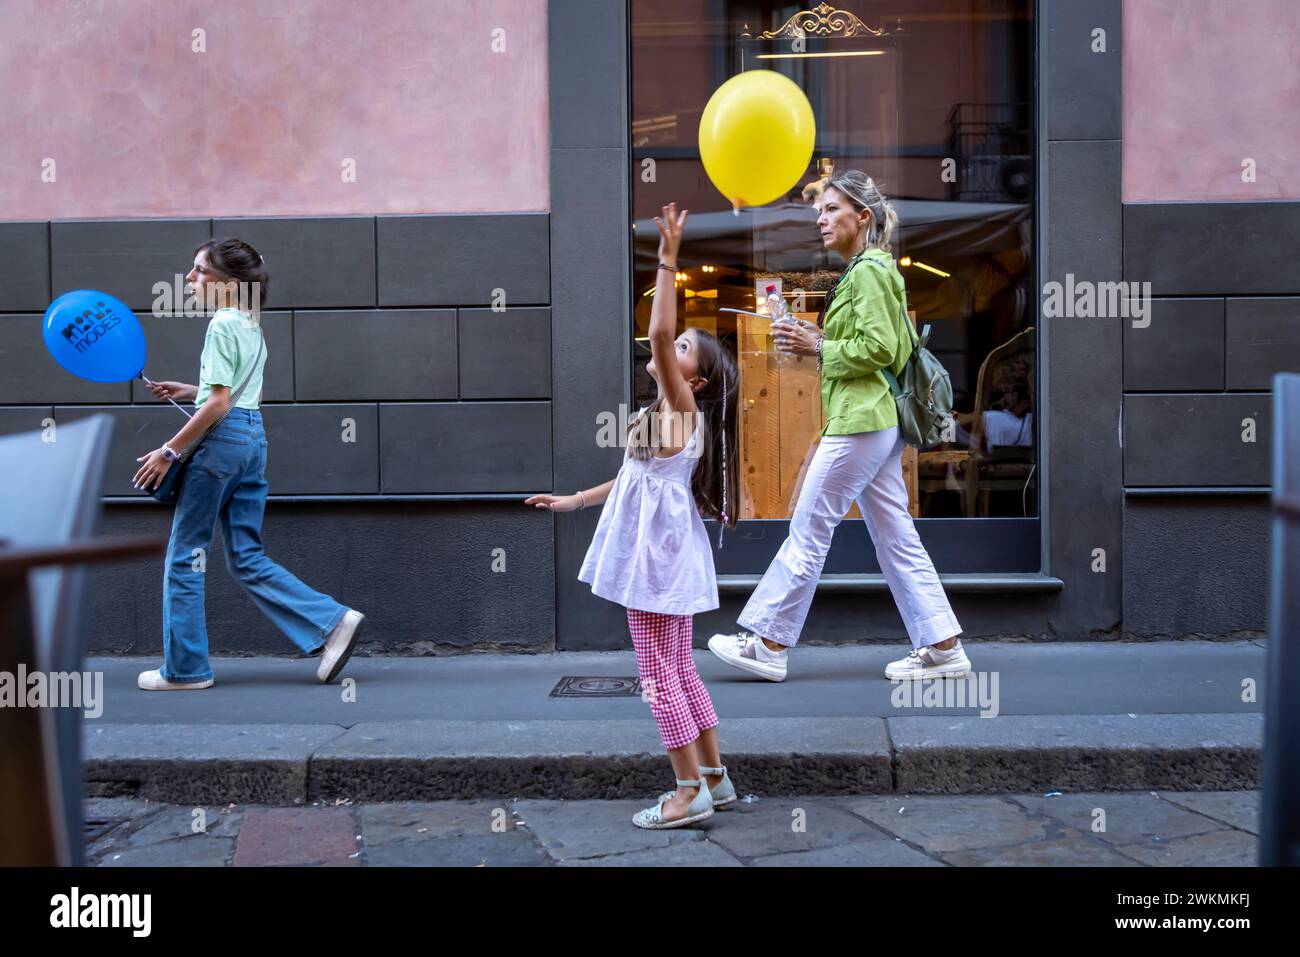 Une jeune fille joue avec un ballon alors qu'elle marche dans une rue du quartier Brera de Milan. Banque D'Images